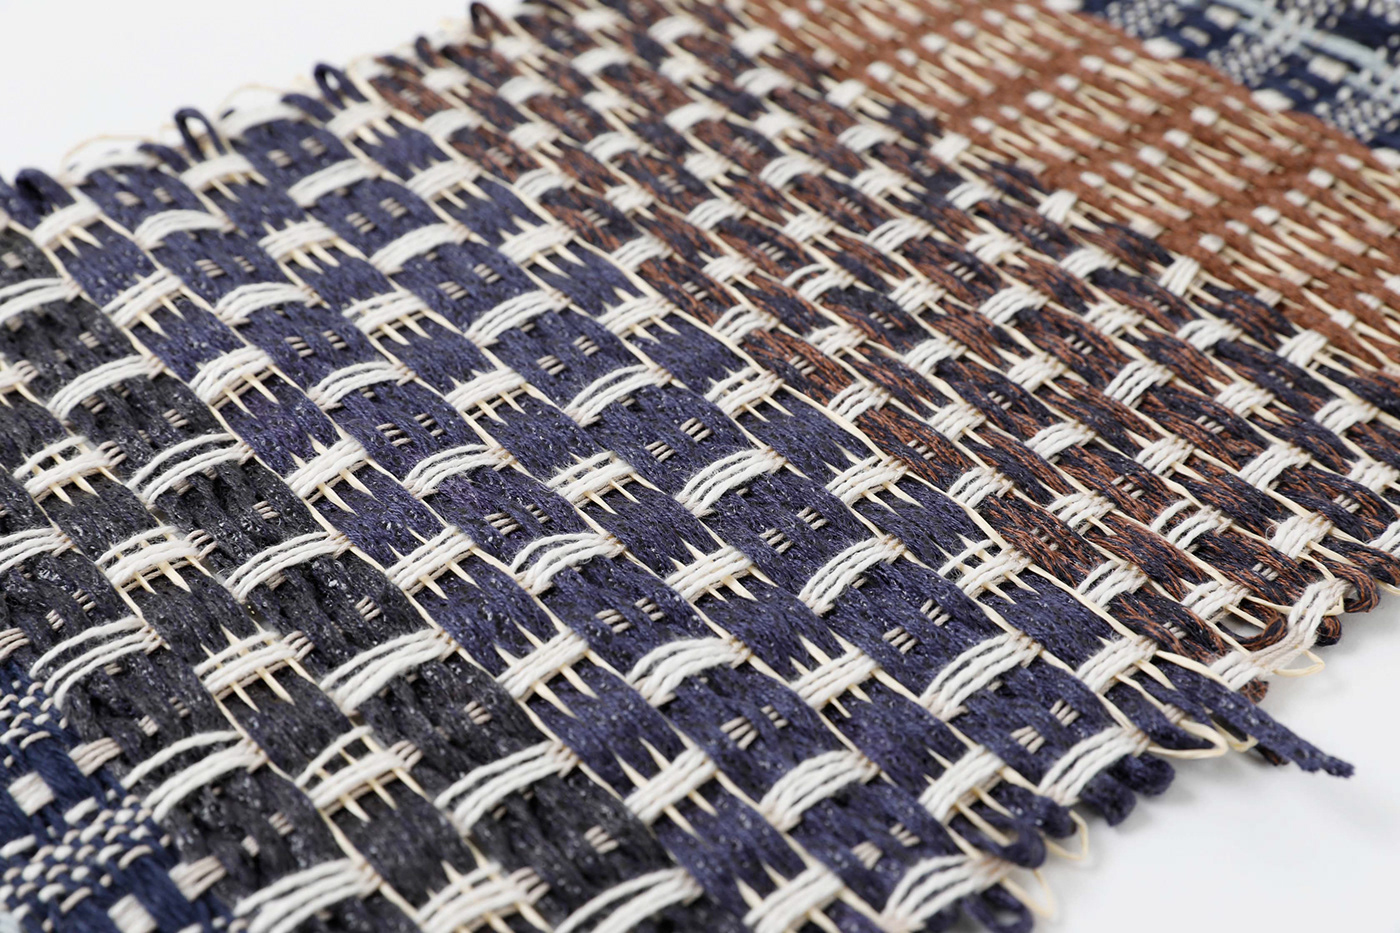 fabric design Fashion  Handweaving handwoven pattern design  surface textile textile design  Woven woven textiles